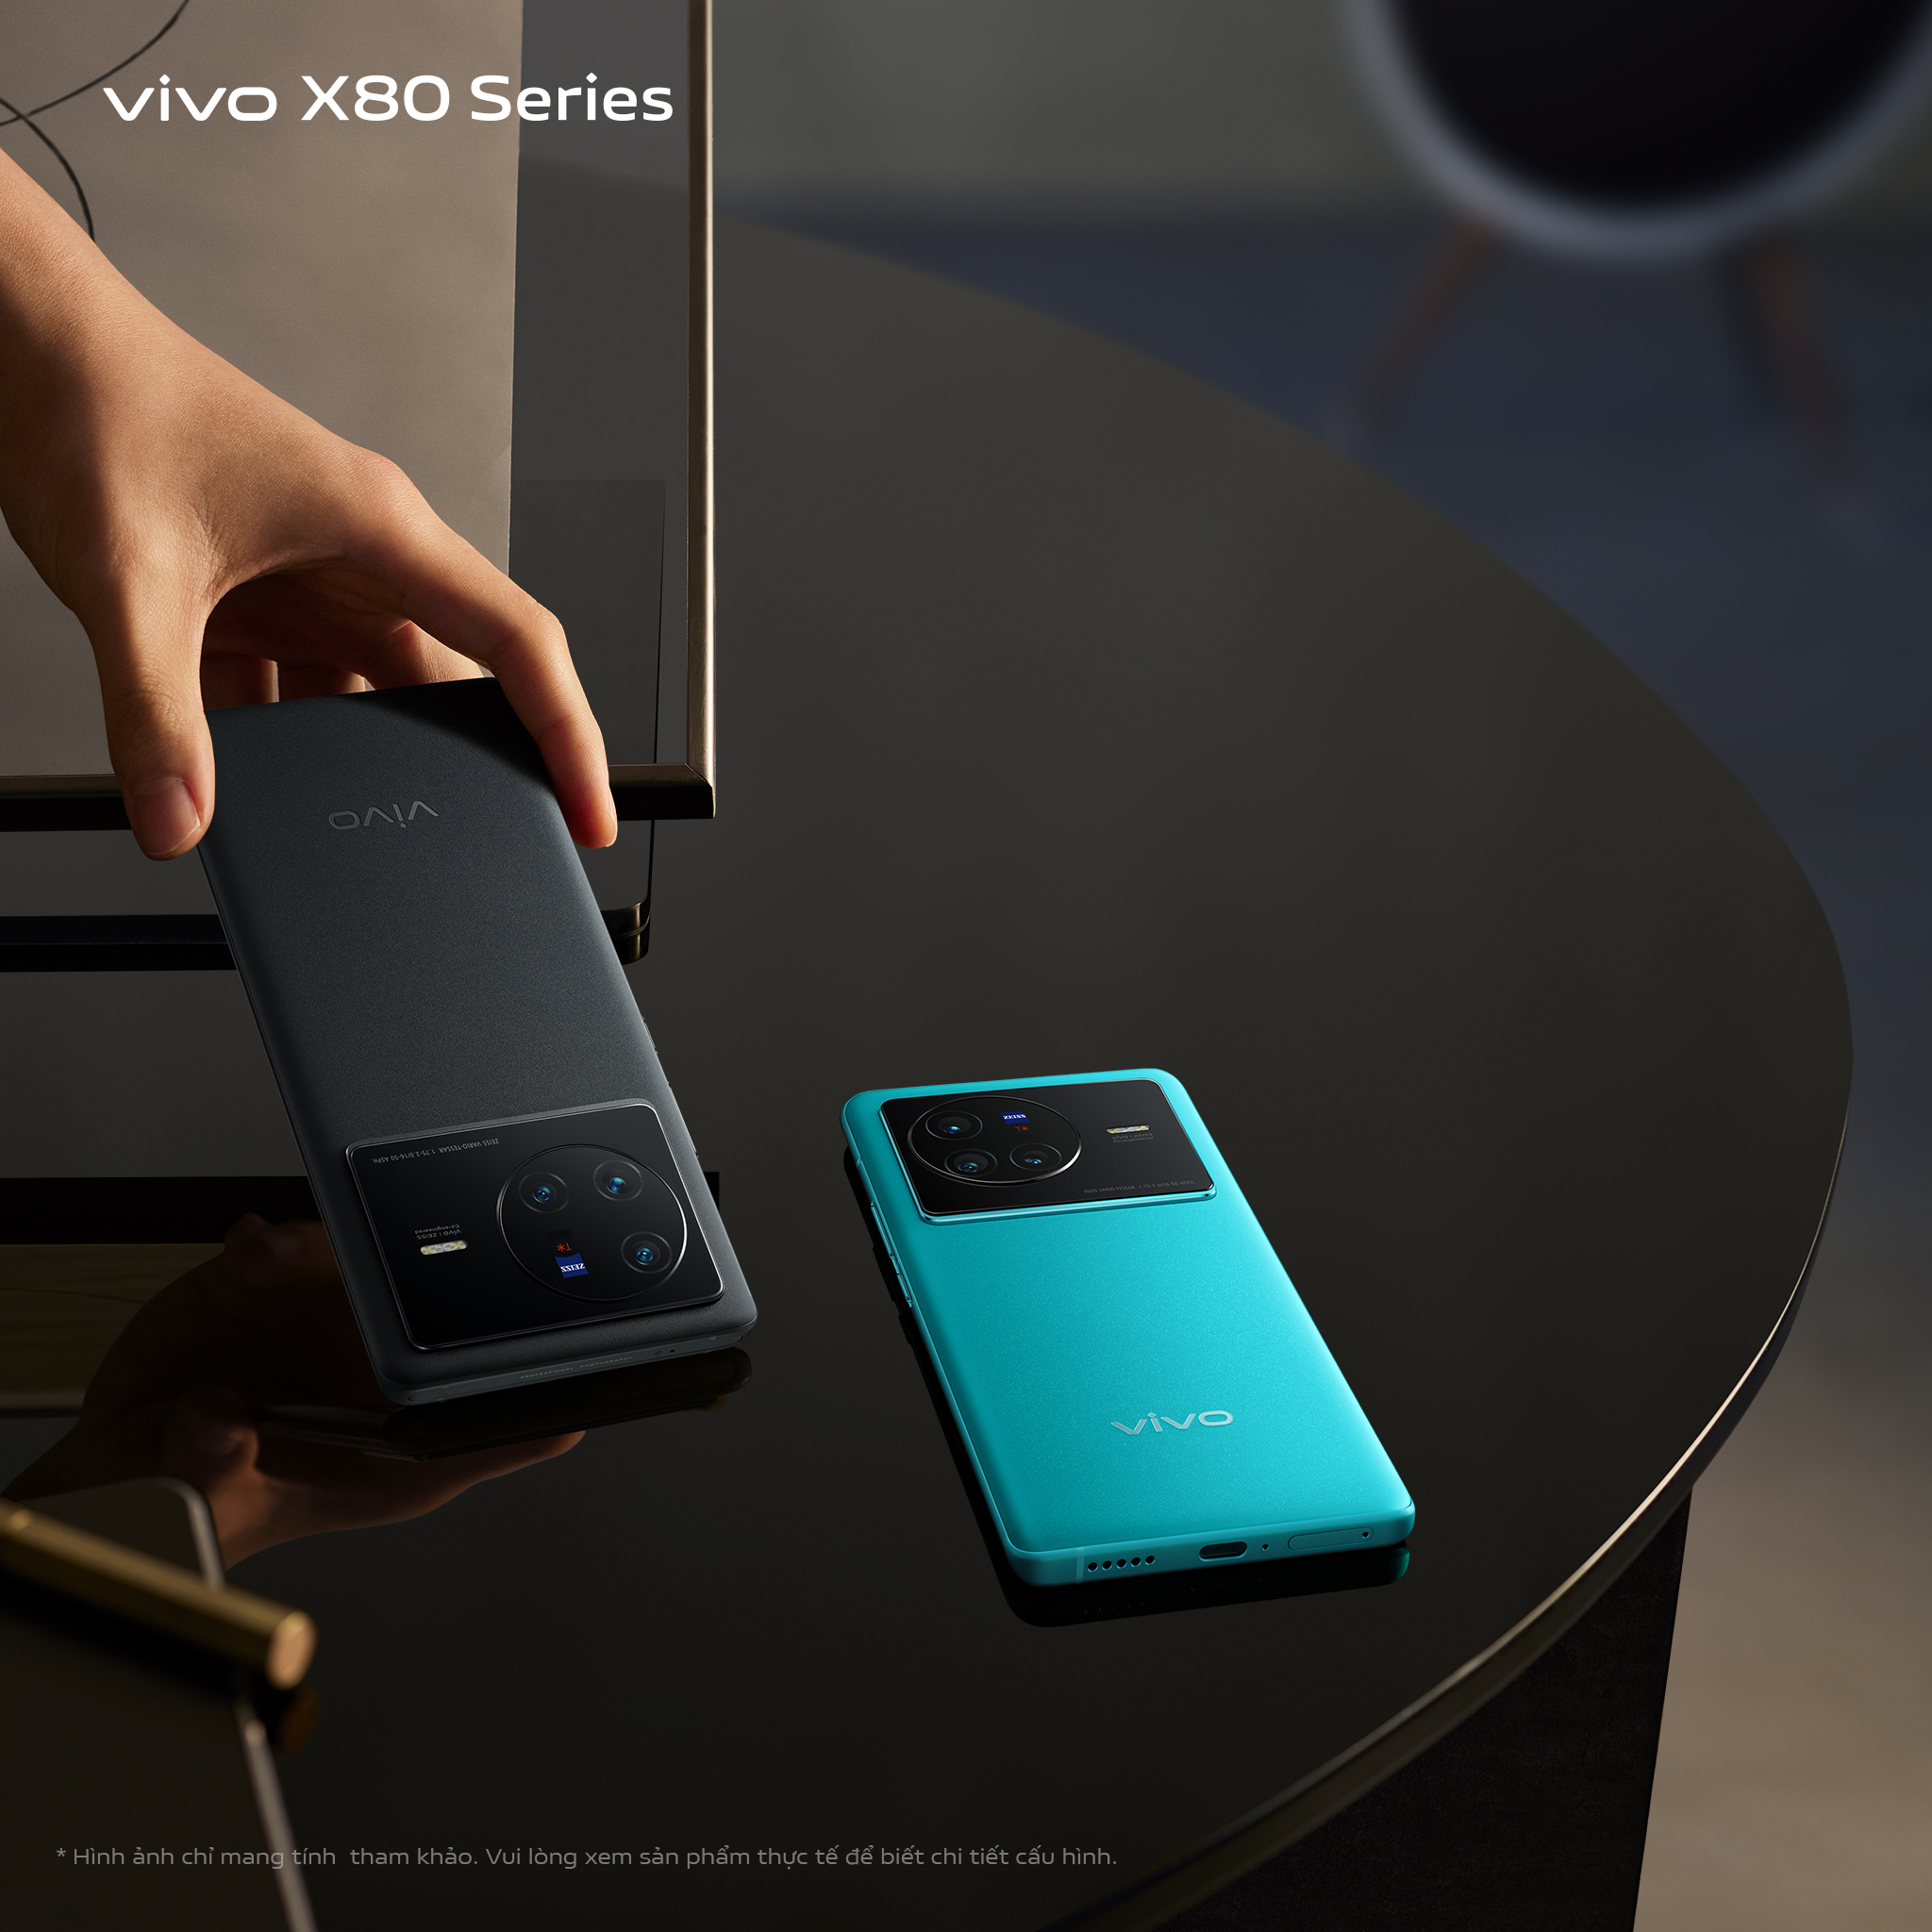 [CHÍNH THỨC] VIVO X80 series ra mắt: Hiệu năng bứt phá | Định hình chuẩn điện ảnh